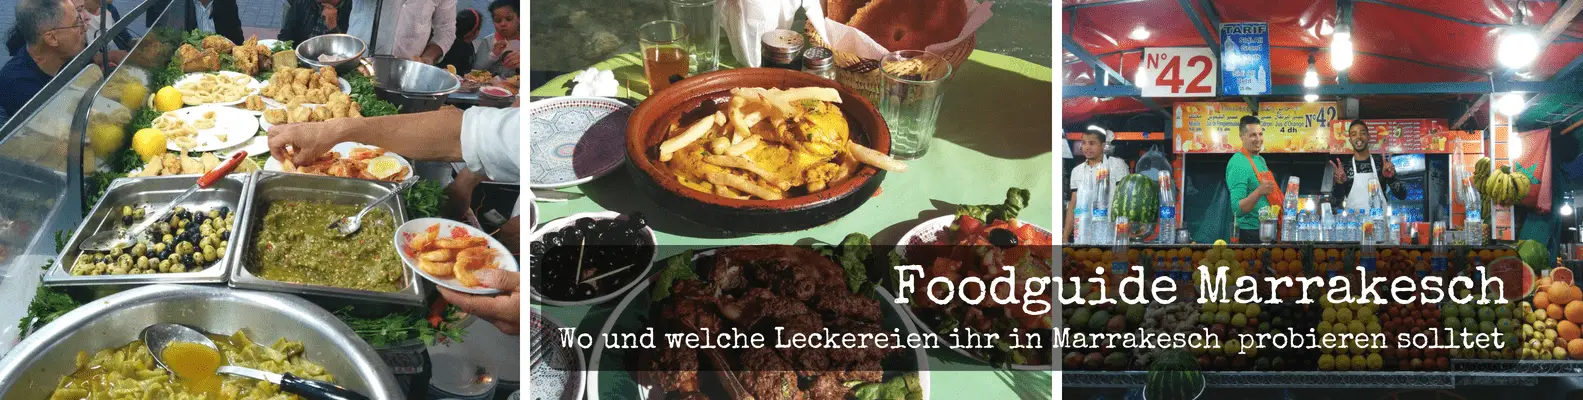 Foodguide Marrakesch - Essen und Restaurants in Marrakesch